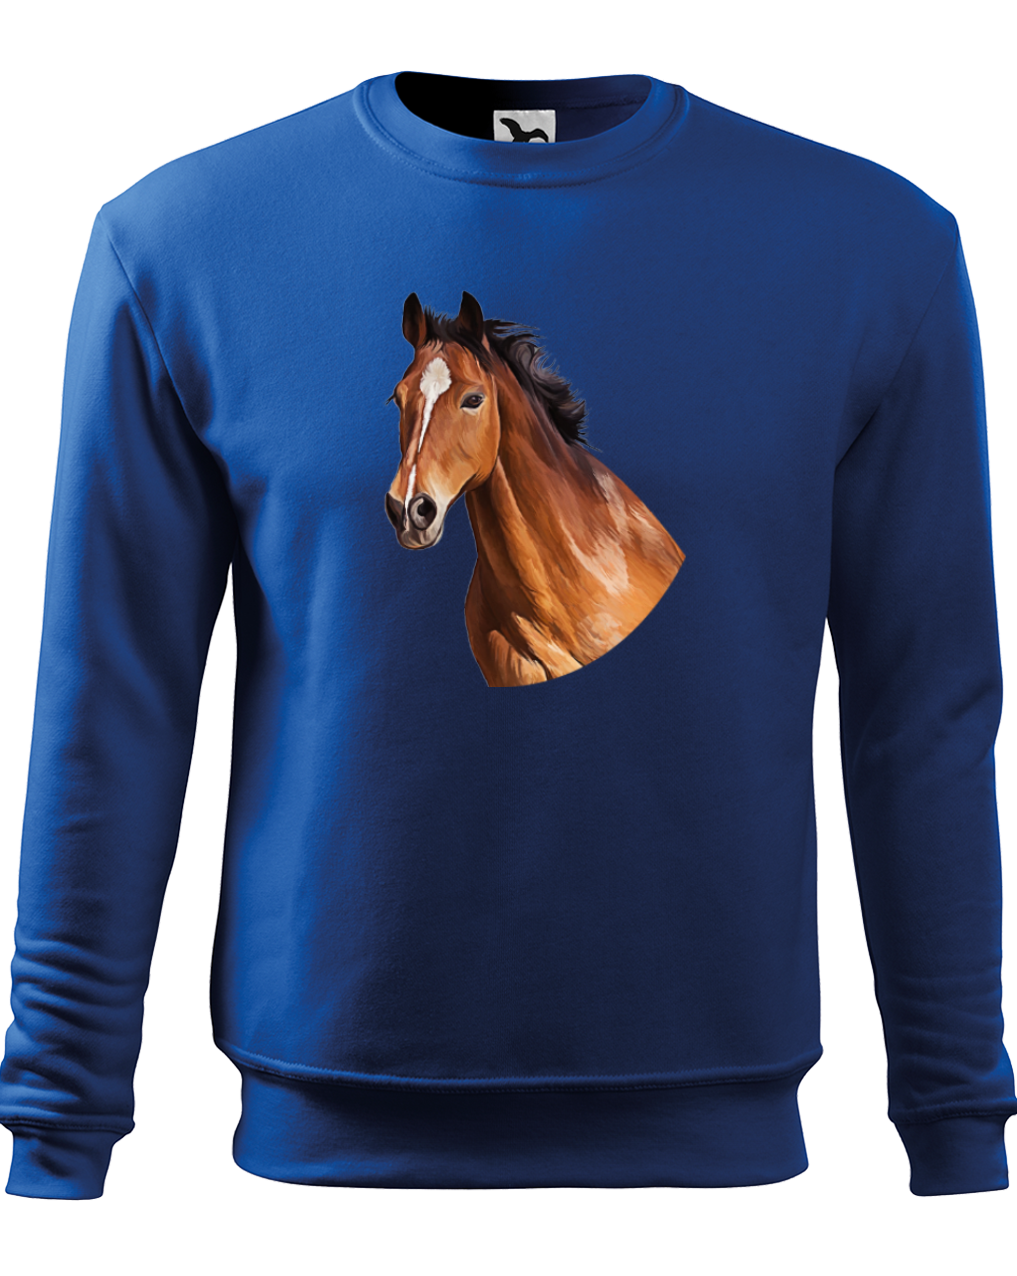 Mikina s koněm - Hnědák Velikost: S, Barva: Královská modrá